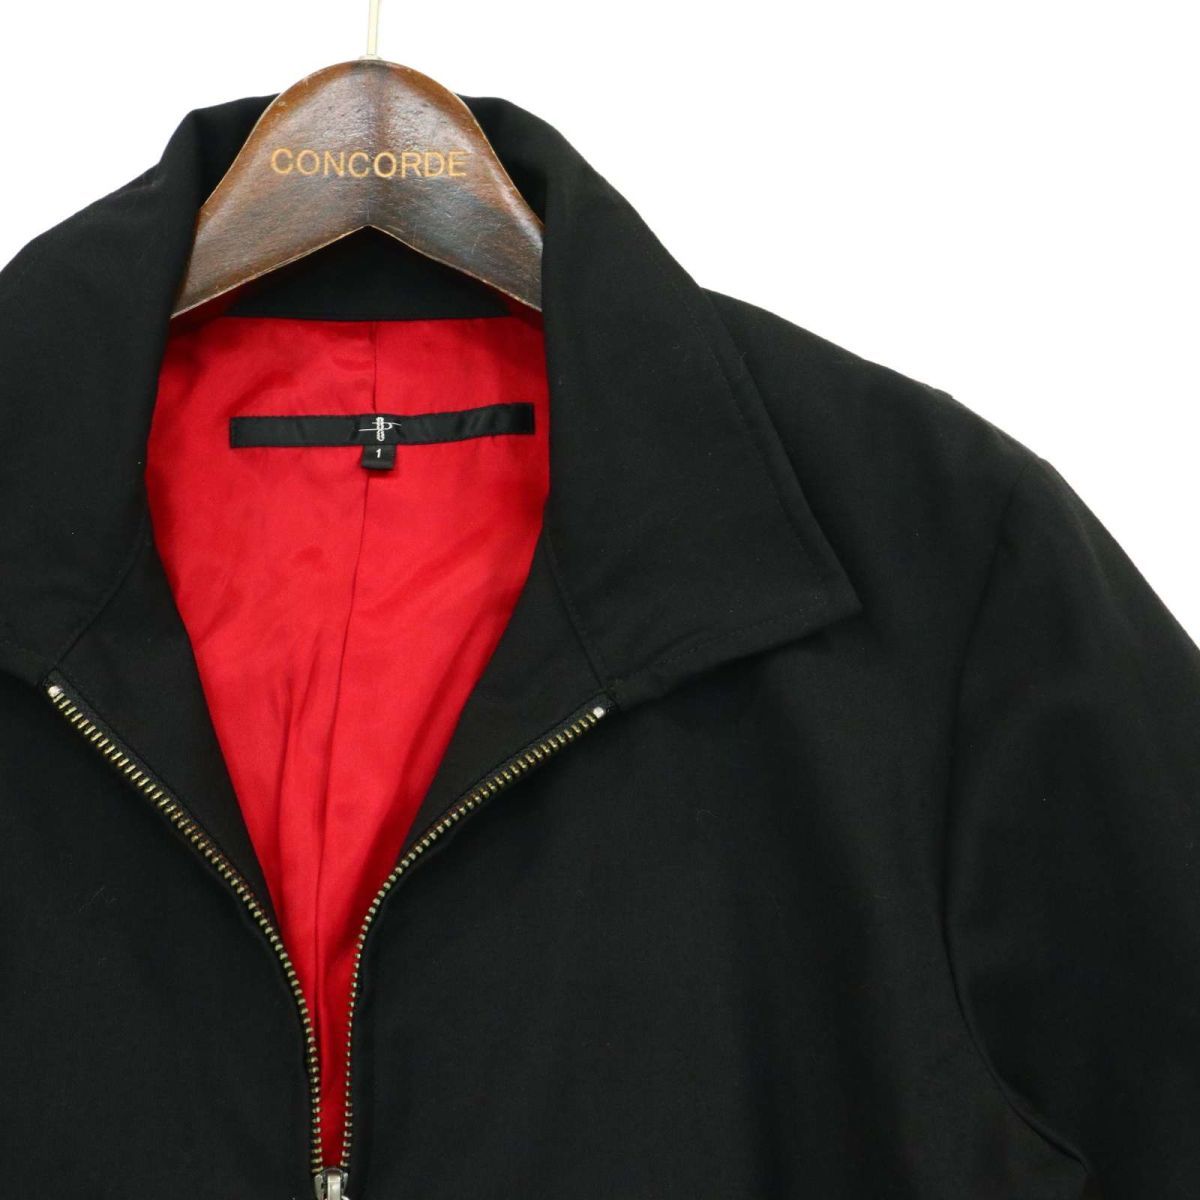 NOID. No ID через год обратная сторона красный * задний цепь вышивка блузон жакет Sz.1 мужской чёрный A3T09595_8#O